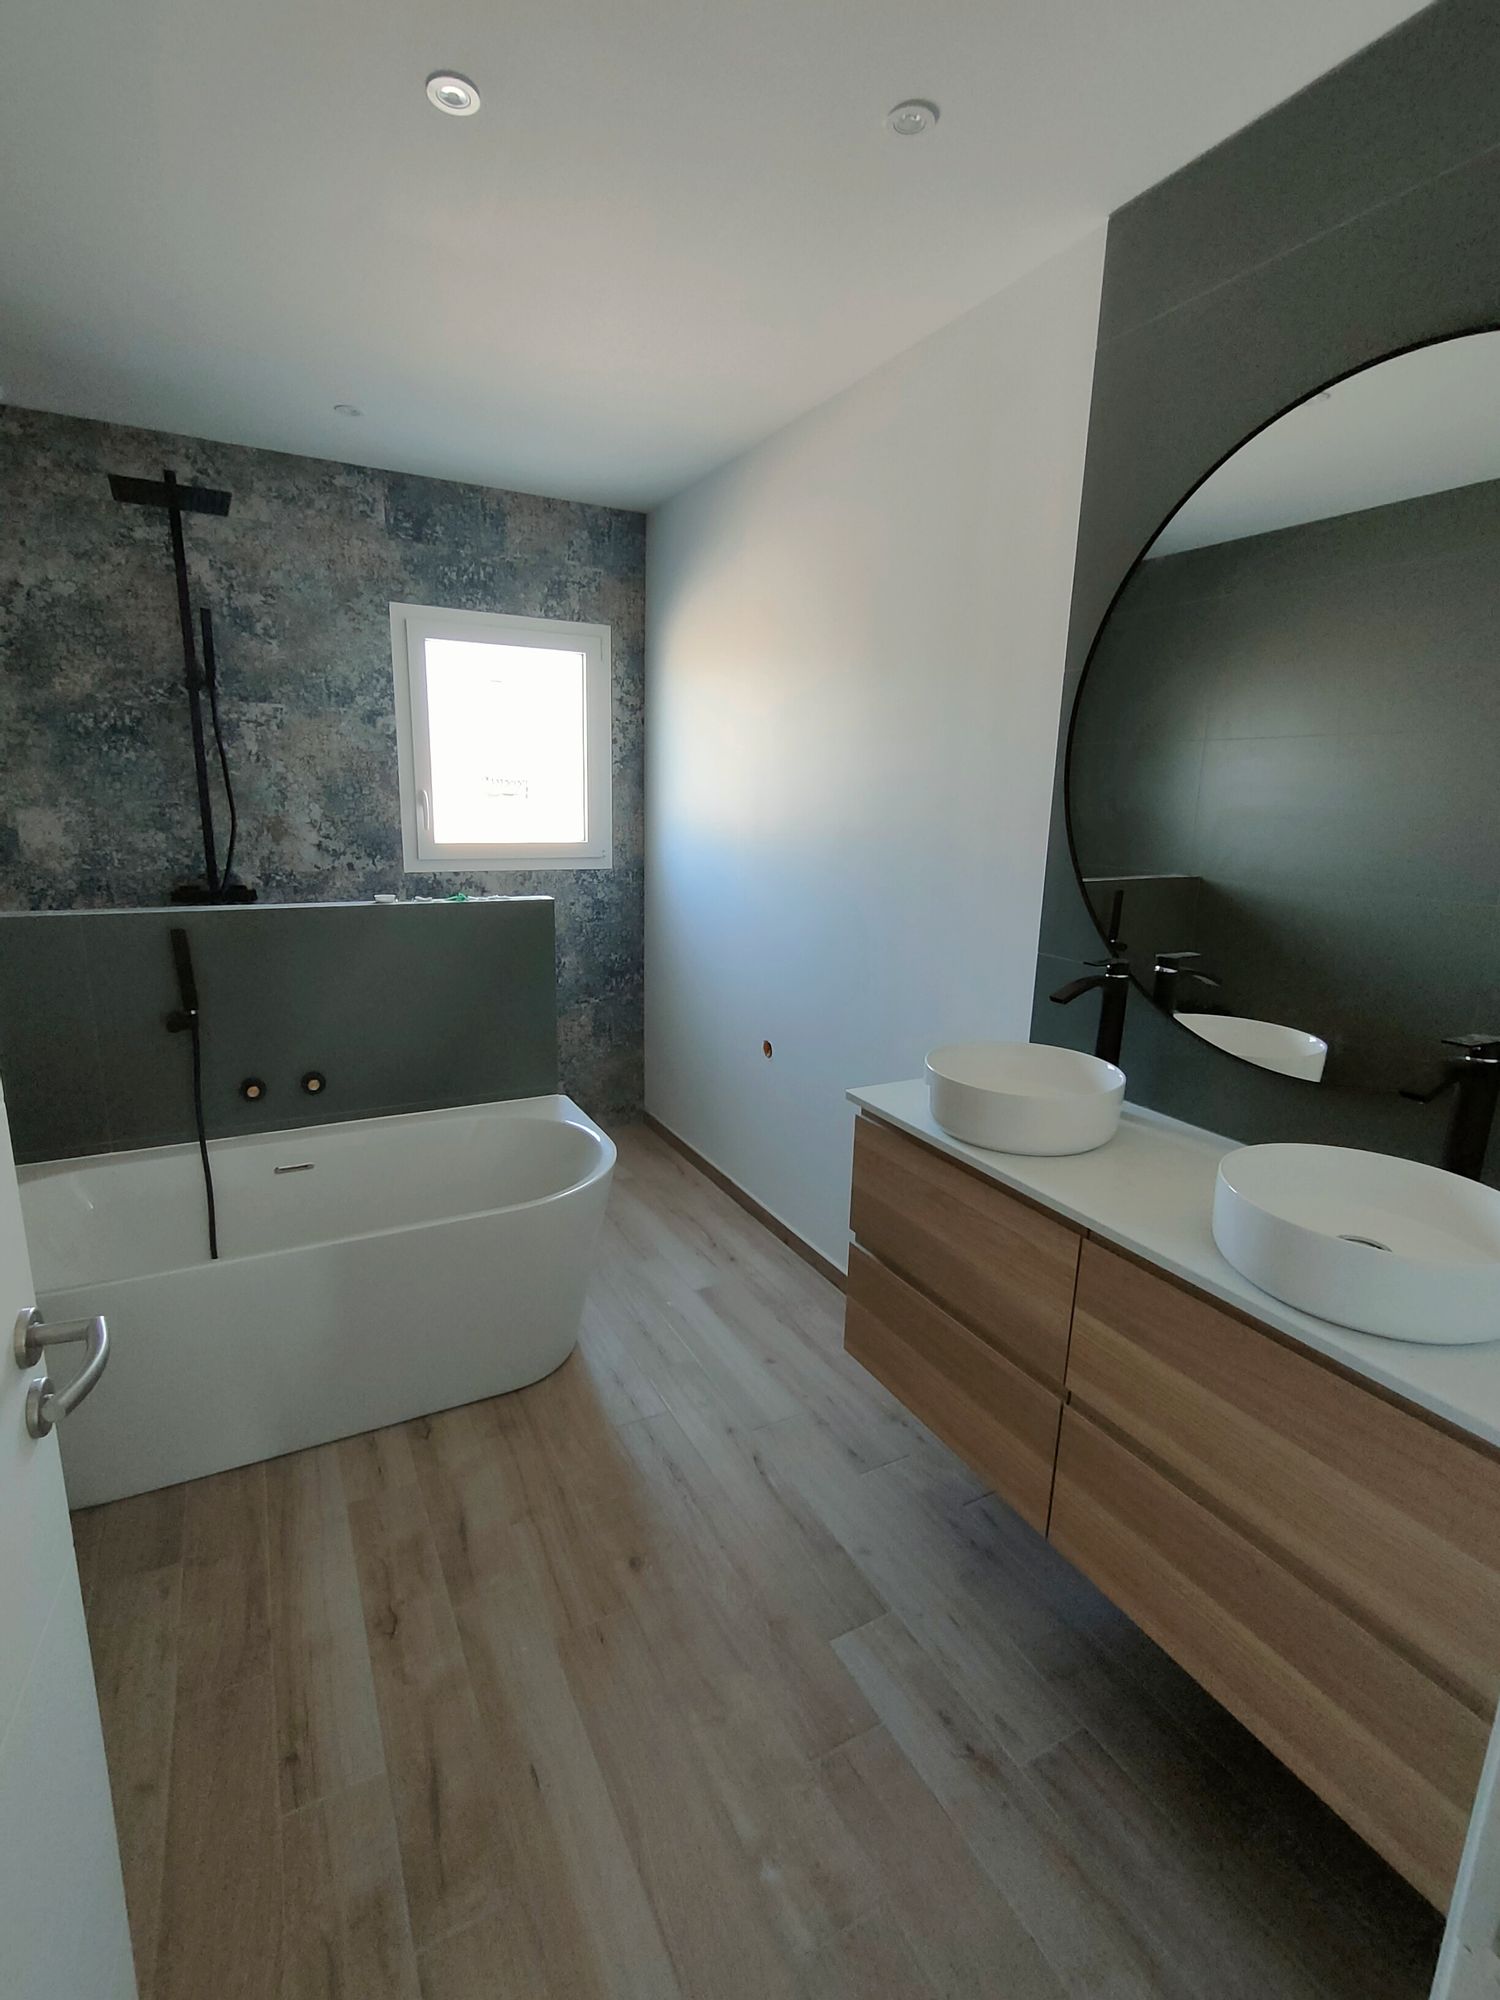 salle de bain moderne bois blanche et verte